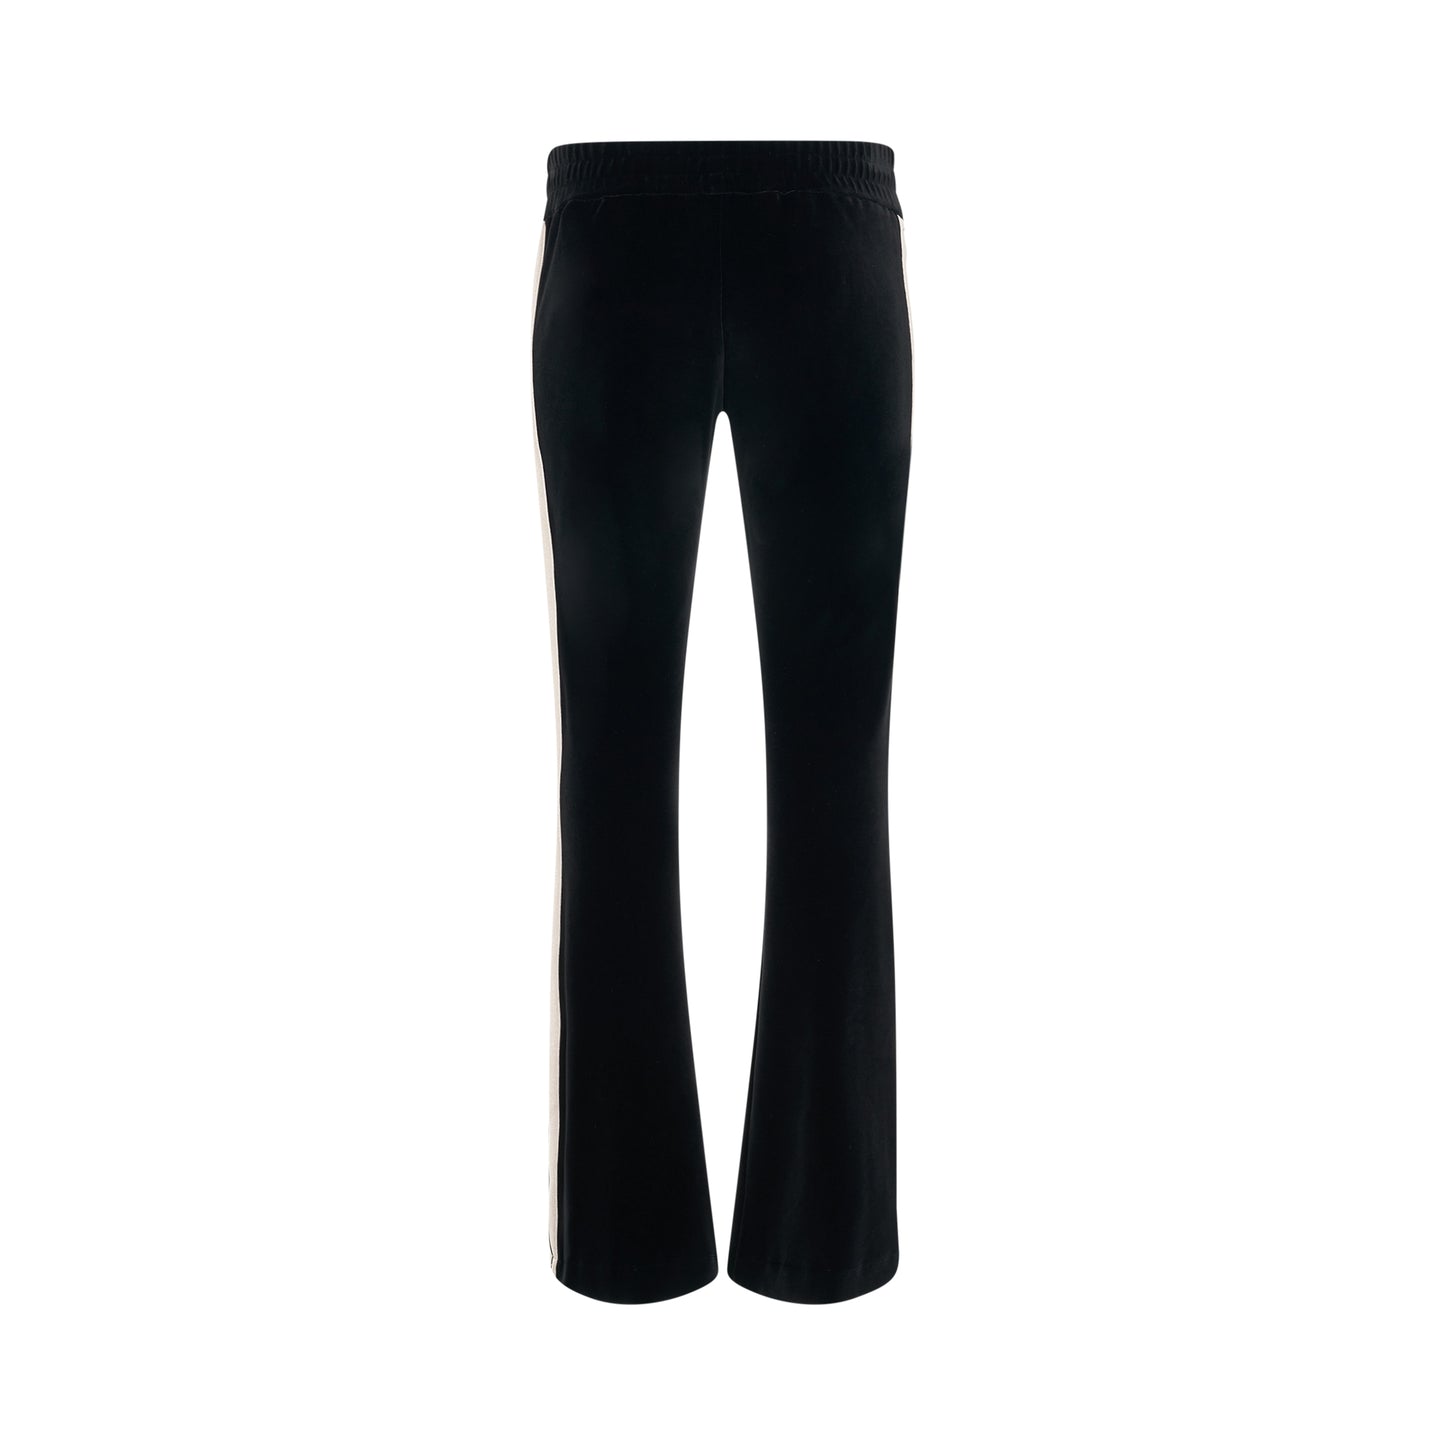 Velvet Flare Track Pants in Black/Off White